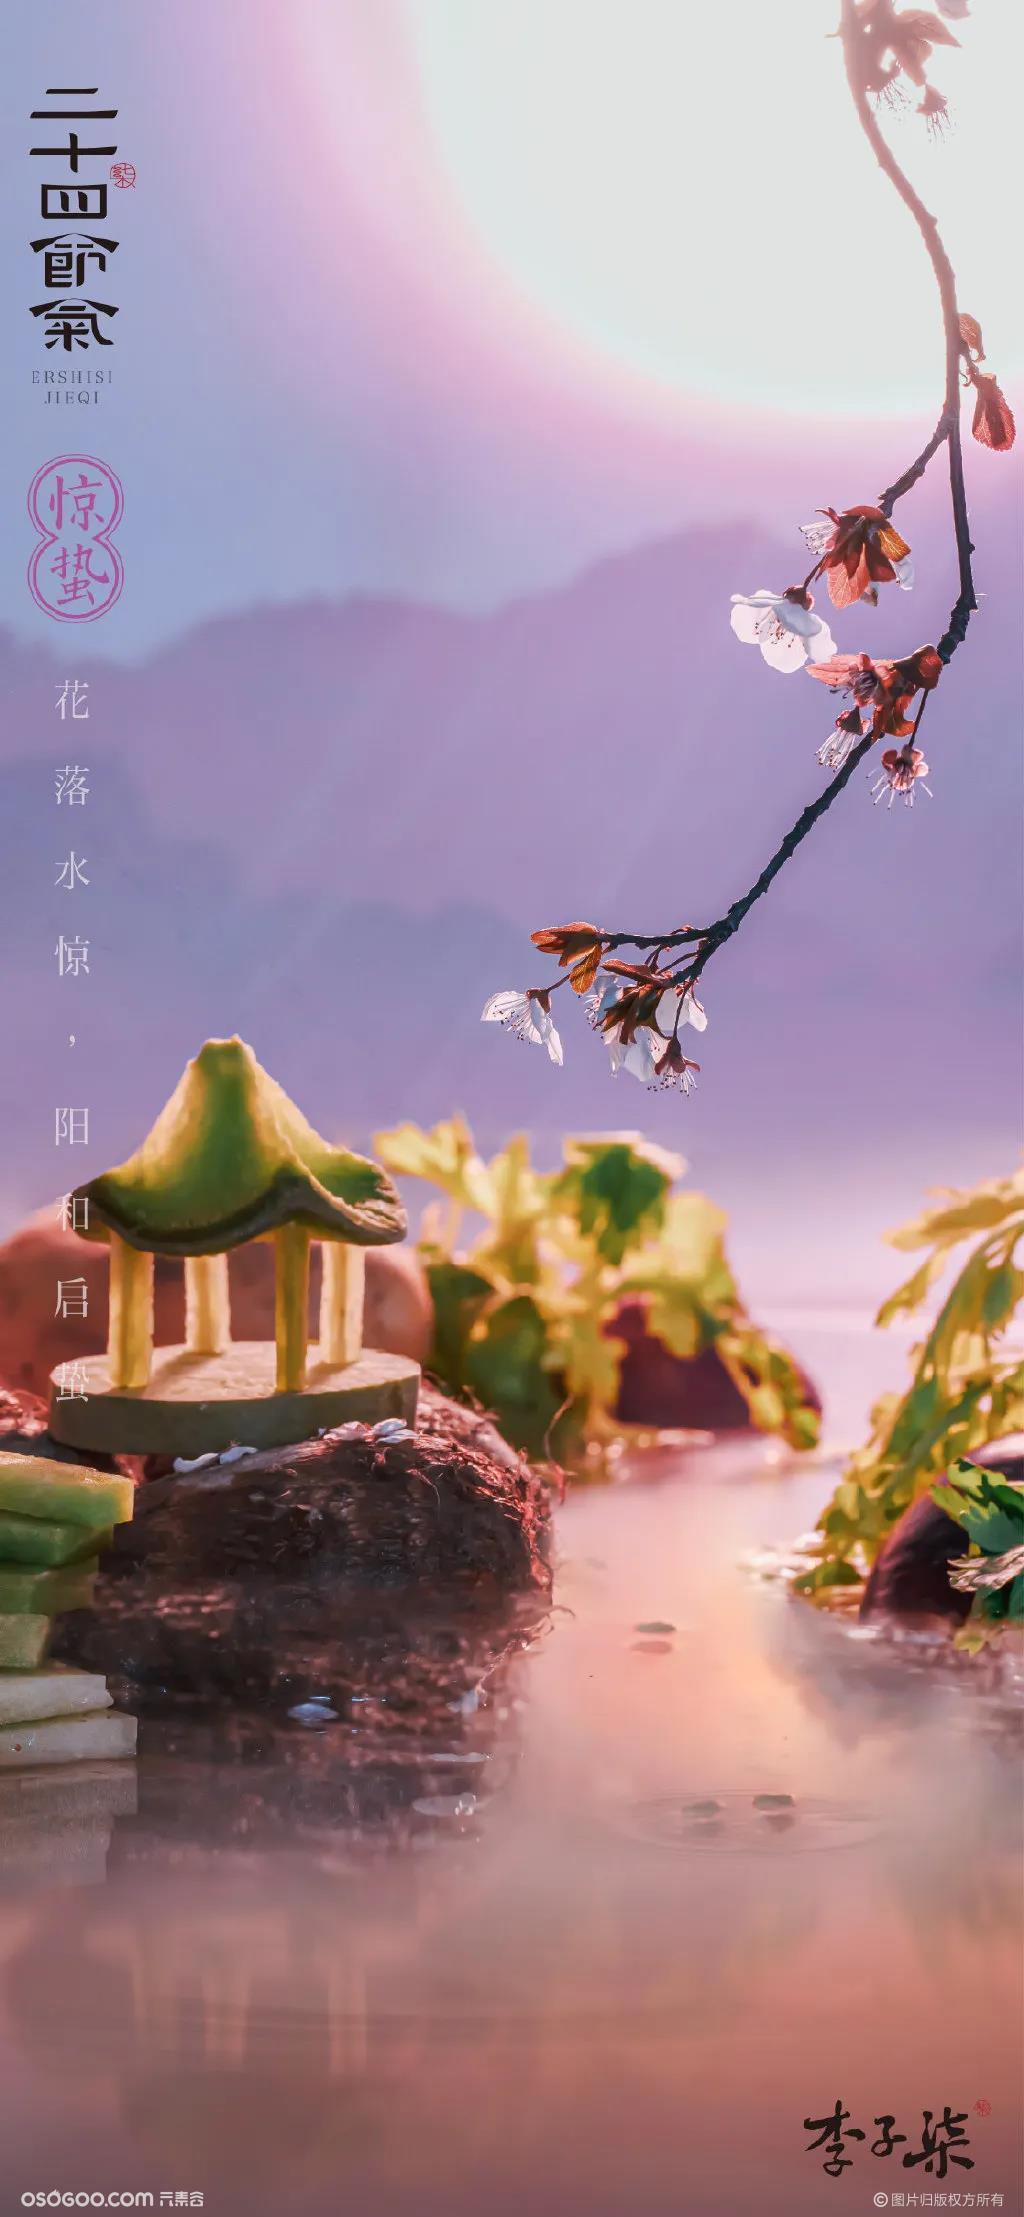 李子柒 #2021年 节气海报# 